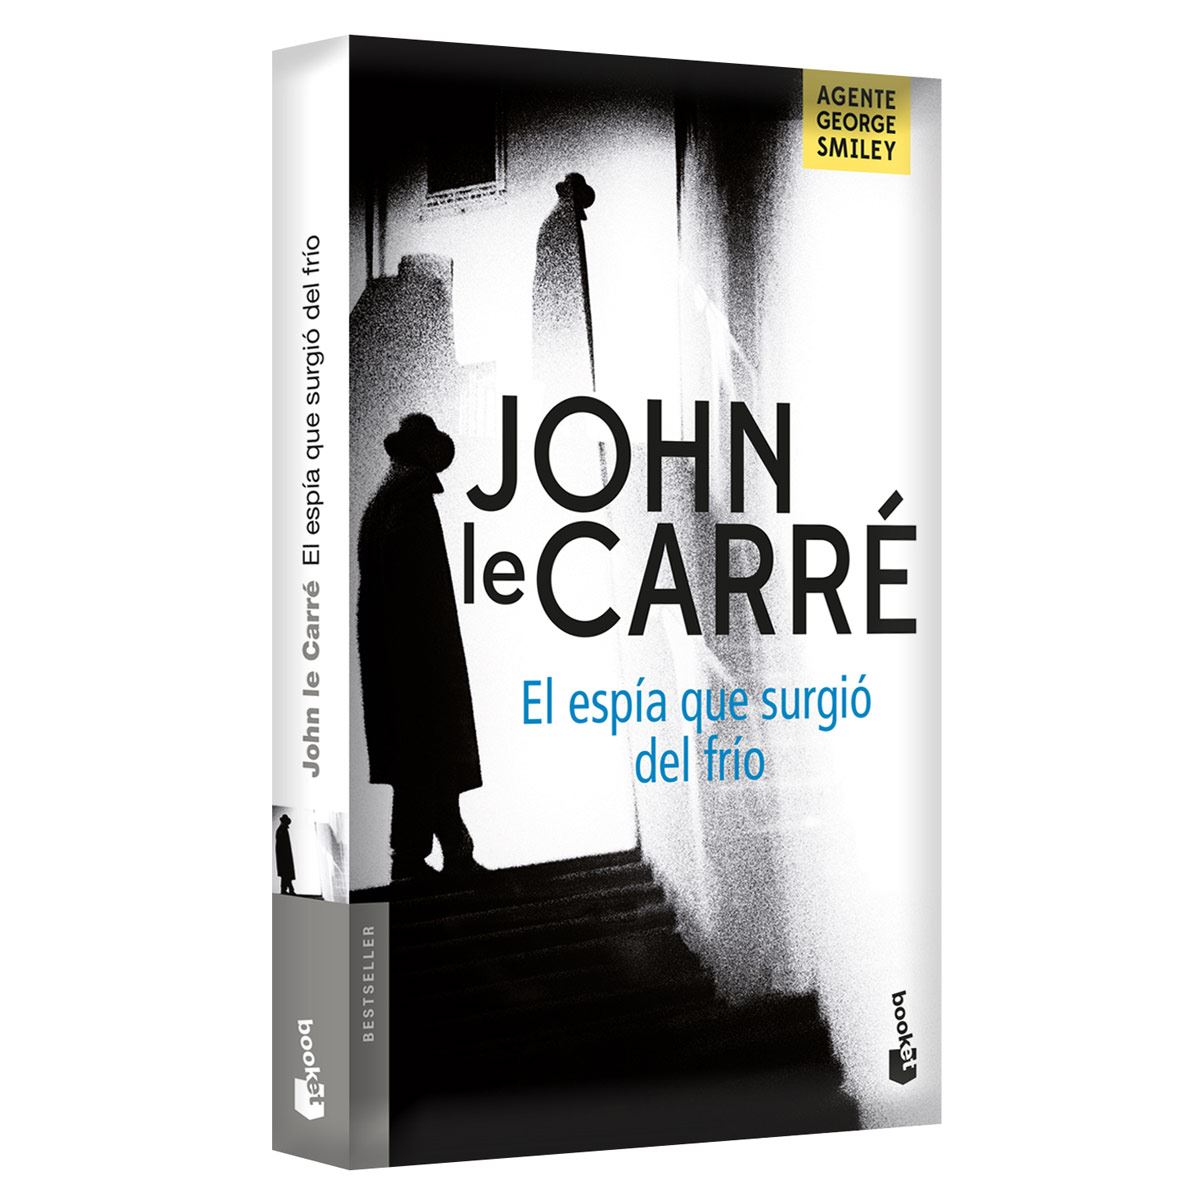 El espía que surgió del frío by John le Carré